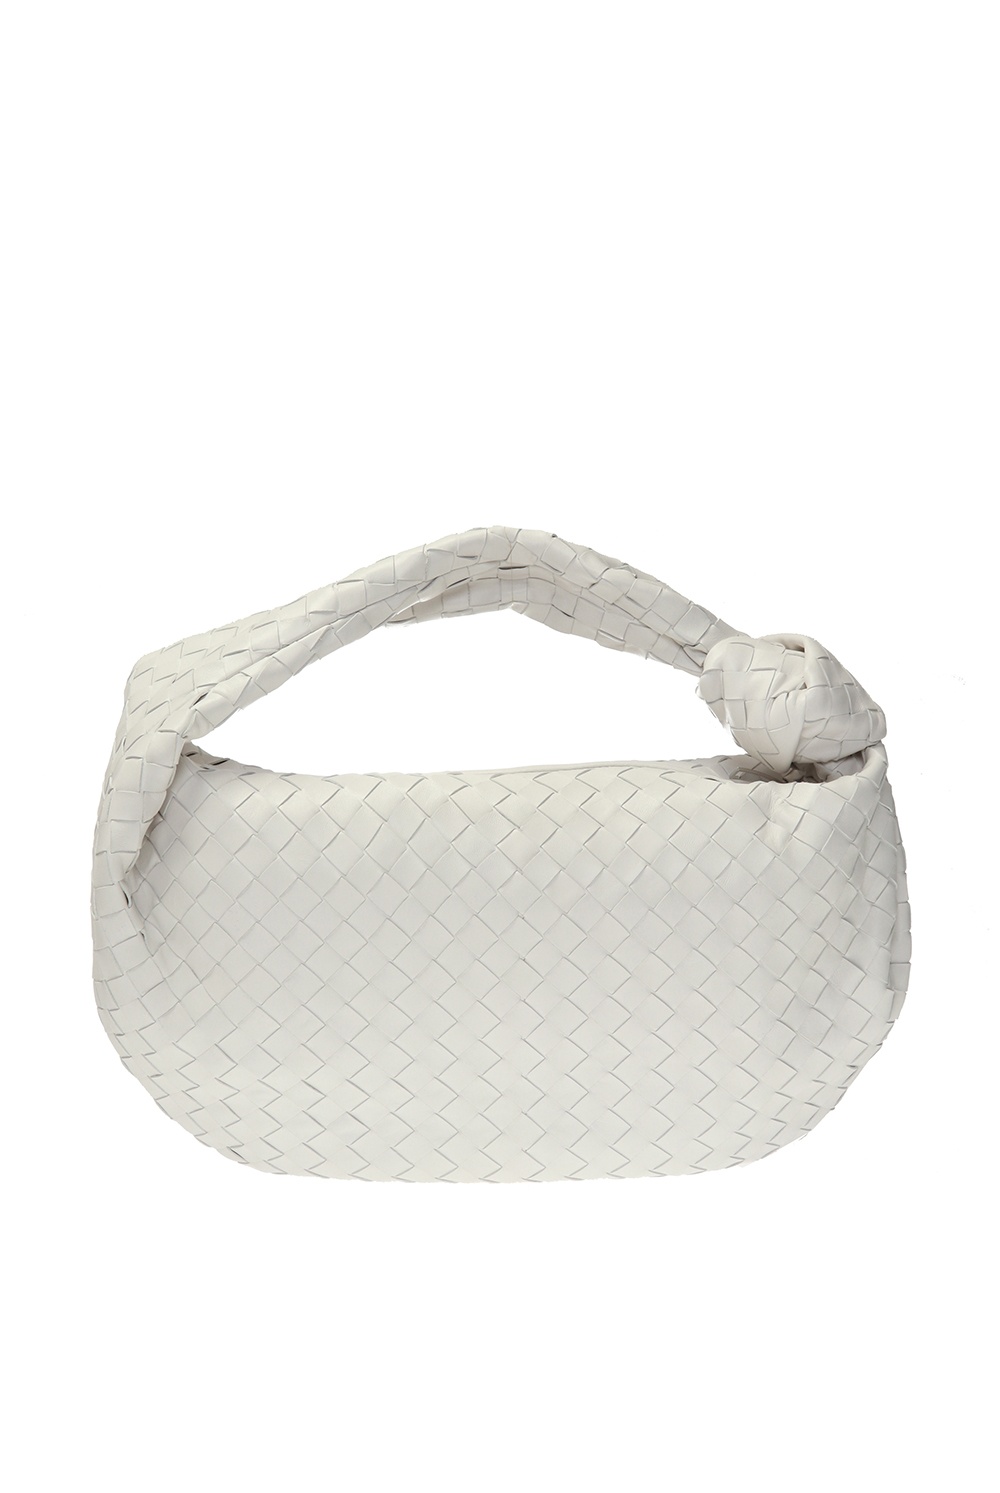 Bottega Veneta ‘Jodie’ shoulder bag